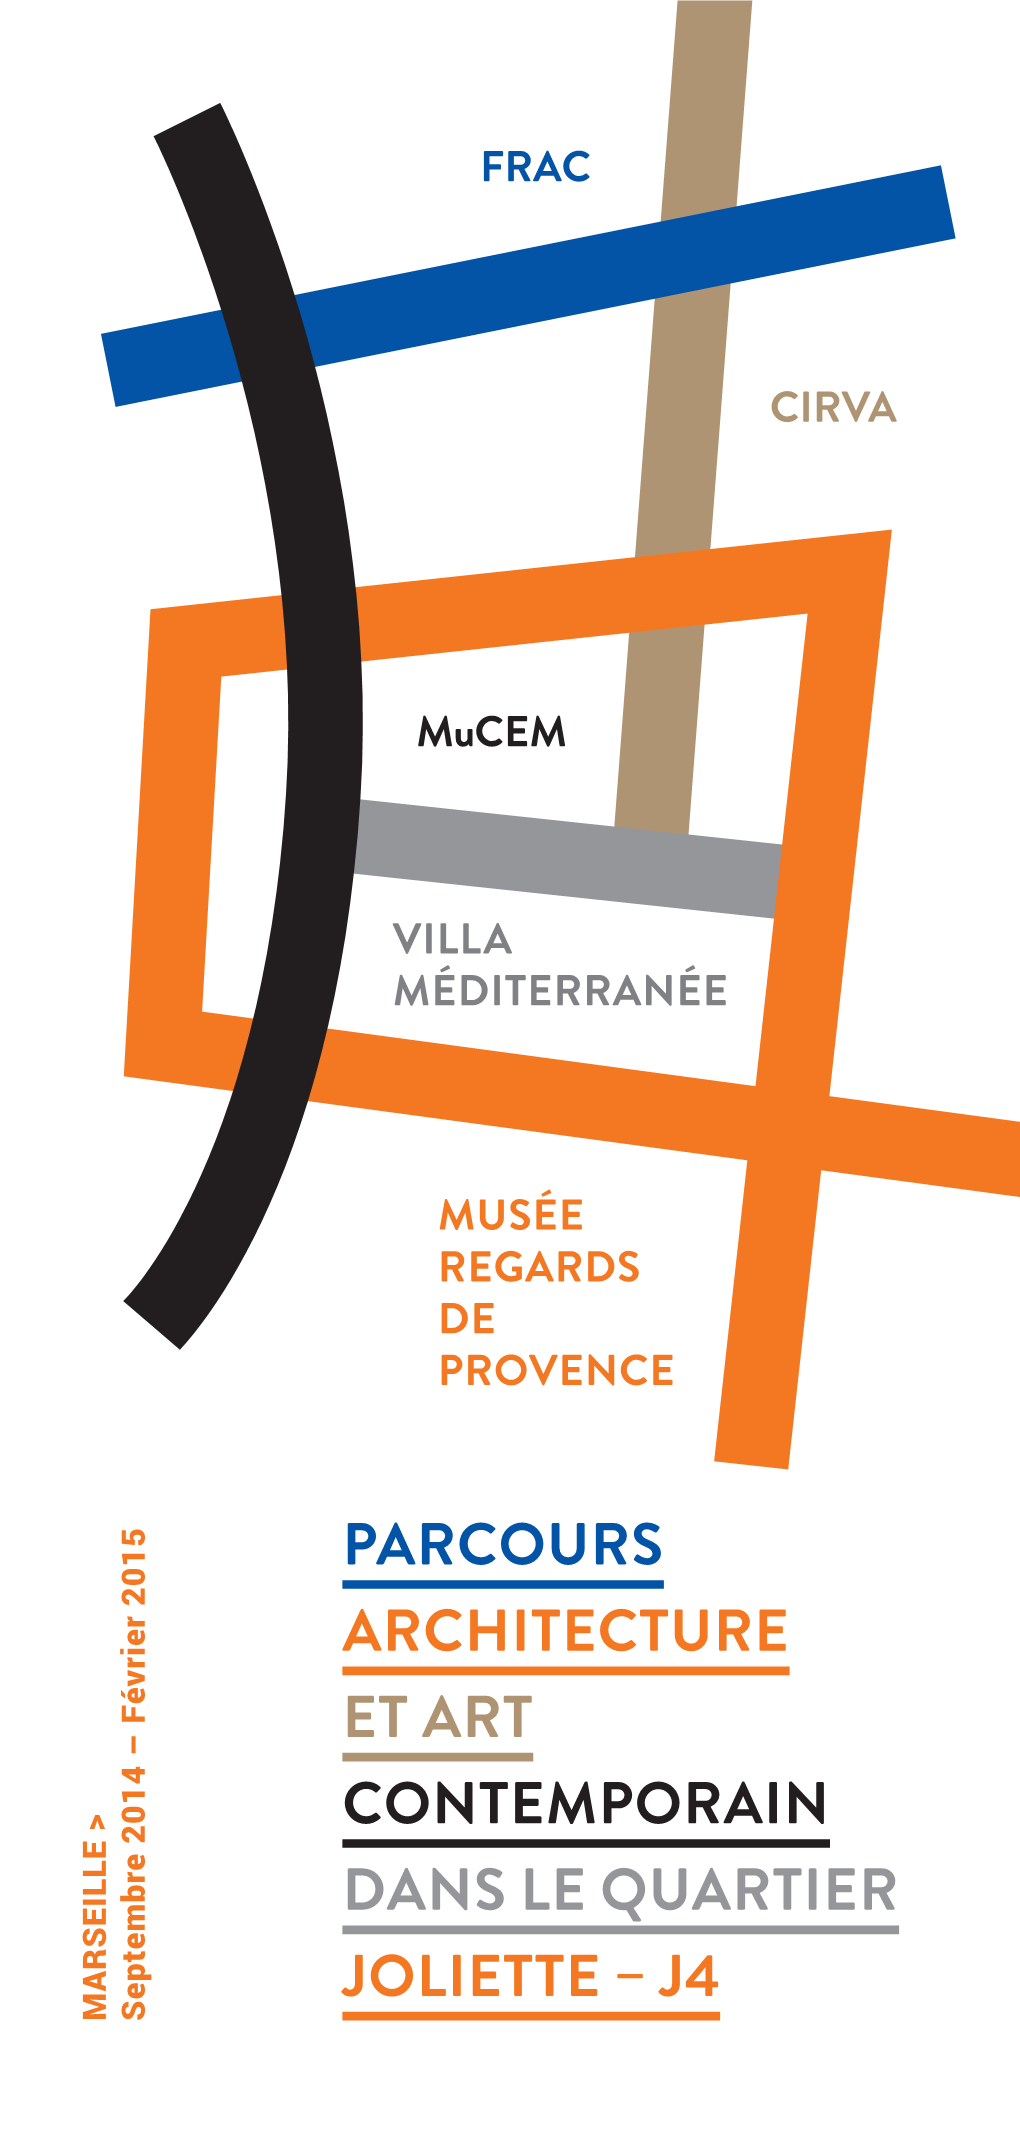 Parcours Architecture Et Art Contemporain Dans Le Quartier Joliette – J4 Marseille > 2015 2014 – Février S Eptembre FRAC